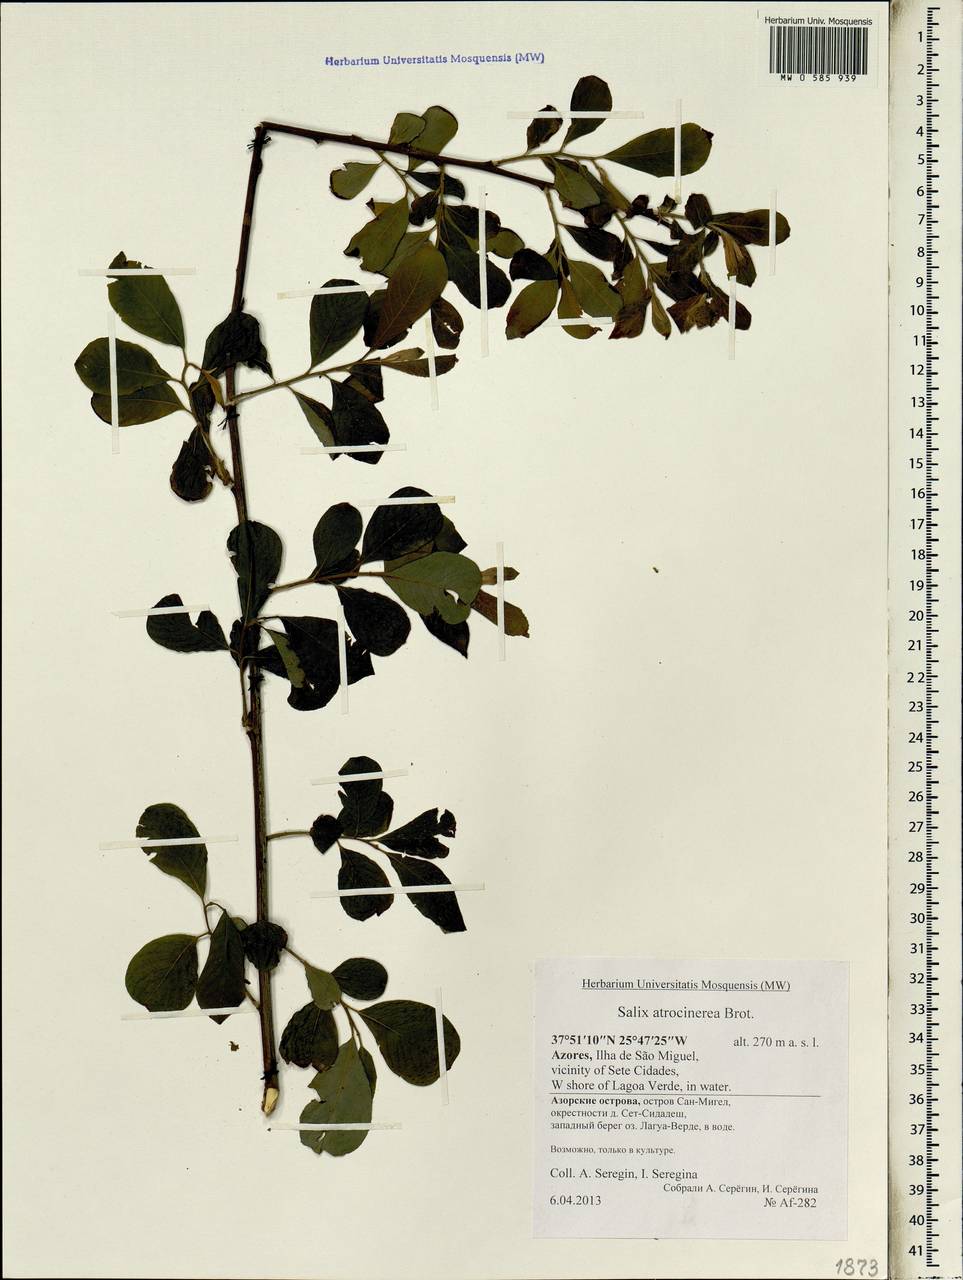 Salix atrocinerea Brot., Africa (AFR) (Portugal)